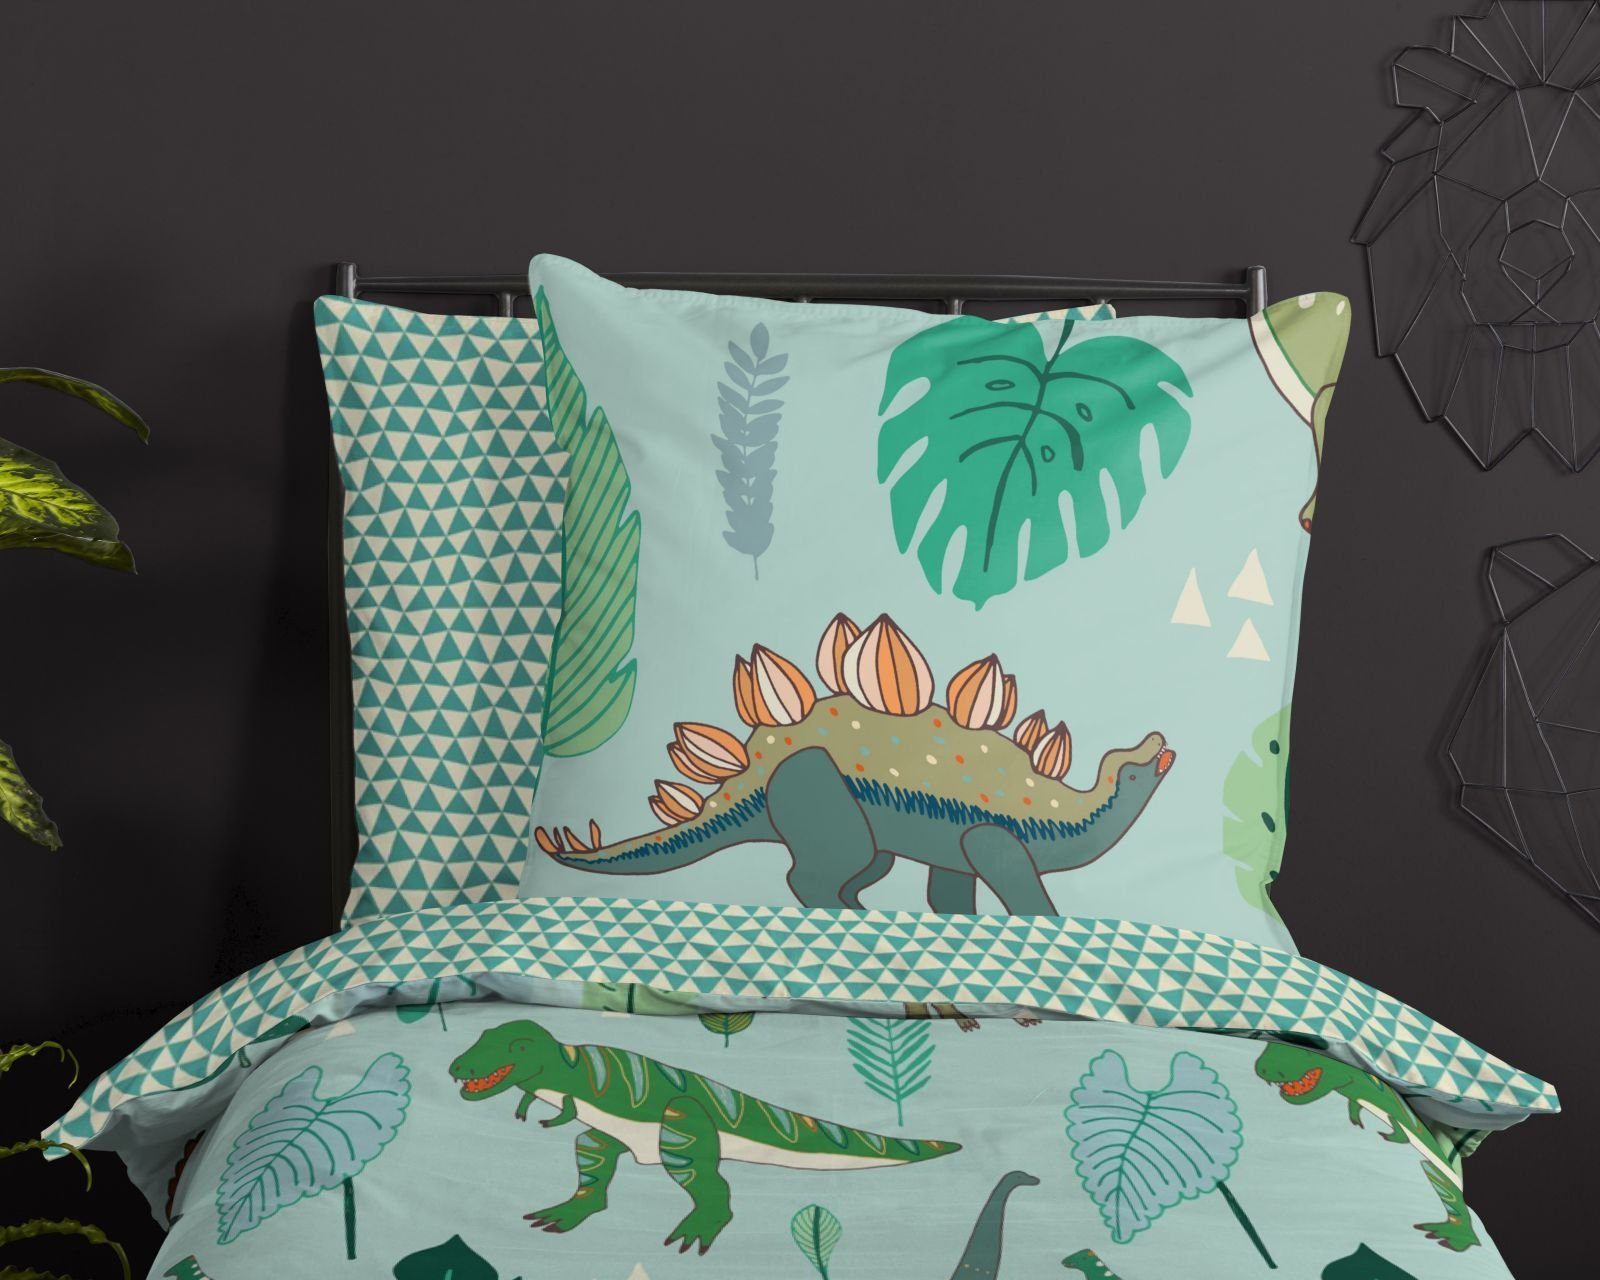 Bettwäsche Pastell Dino Dinosaurier grün Mint Dreieck, soma, Baumolle, 2 teilig, Bettbezug Kopfkissenbezug Set kuschelig weich hochwertig